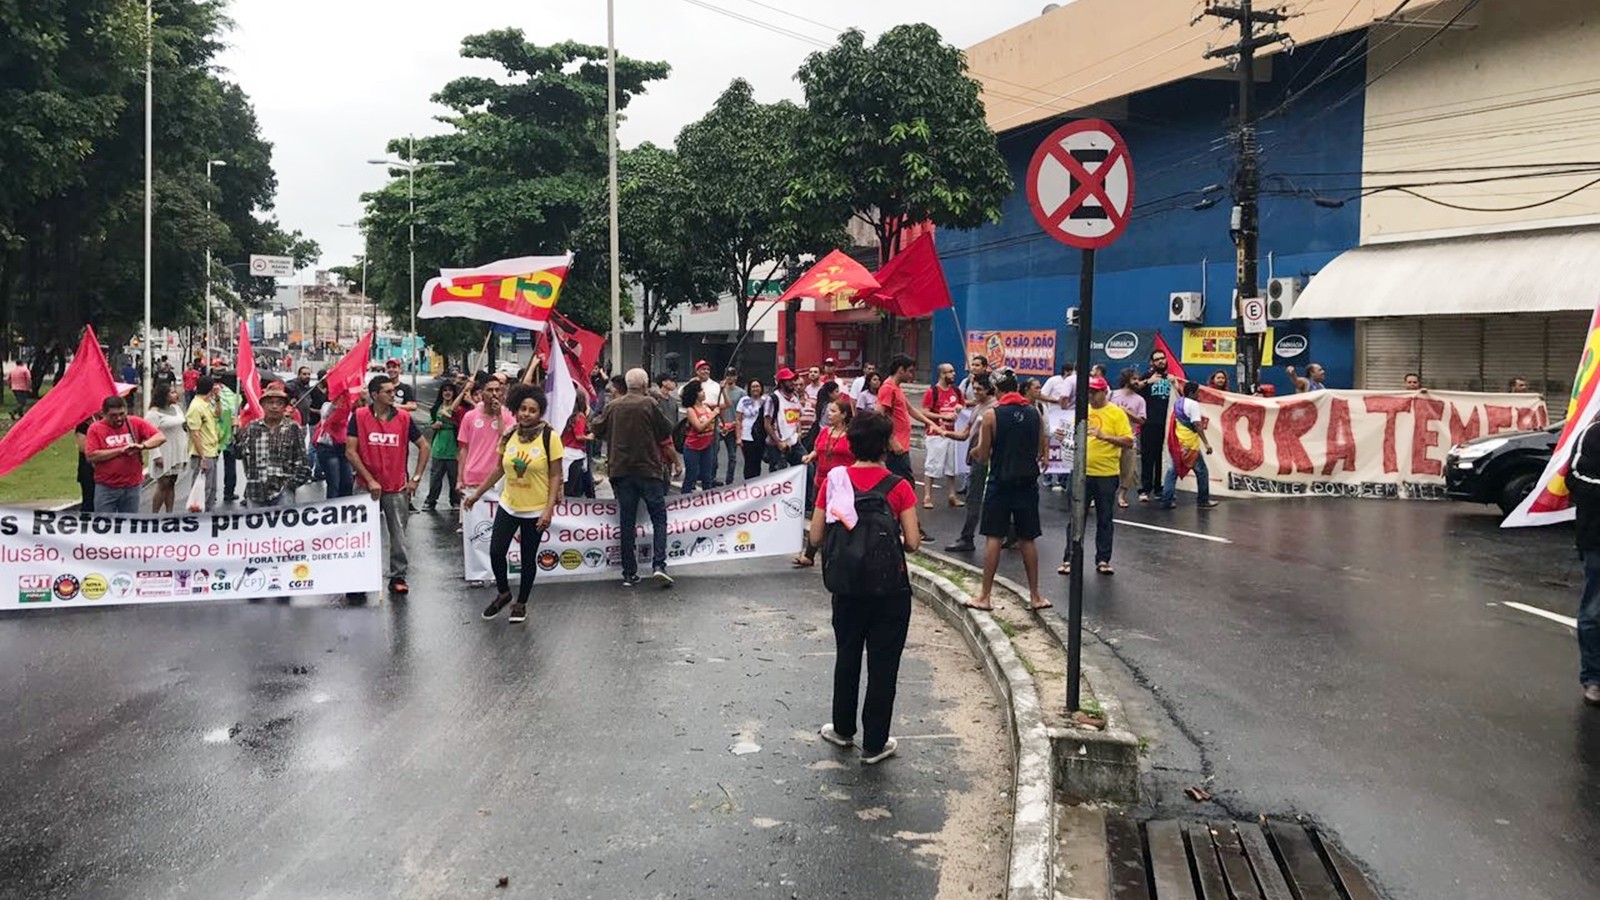 Manifestantes contra presidente Michel Temer e reformas ocuparam ruas de João Pessoa (Foto: Walter Paparazzo)